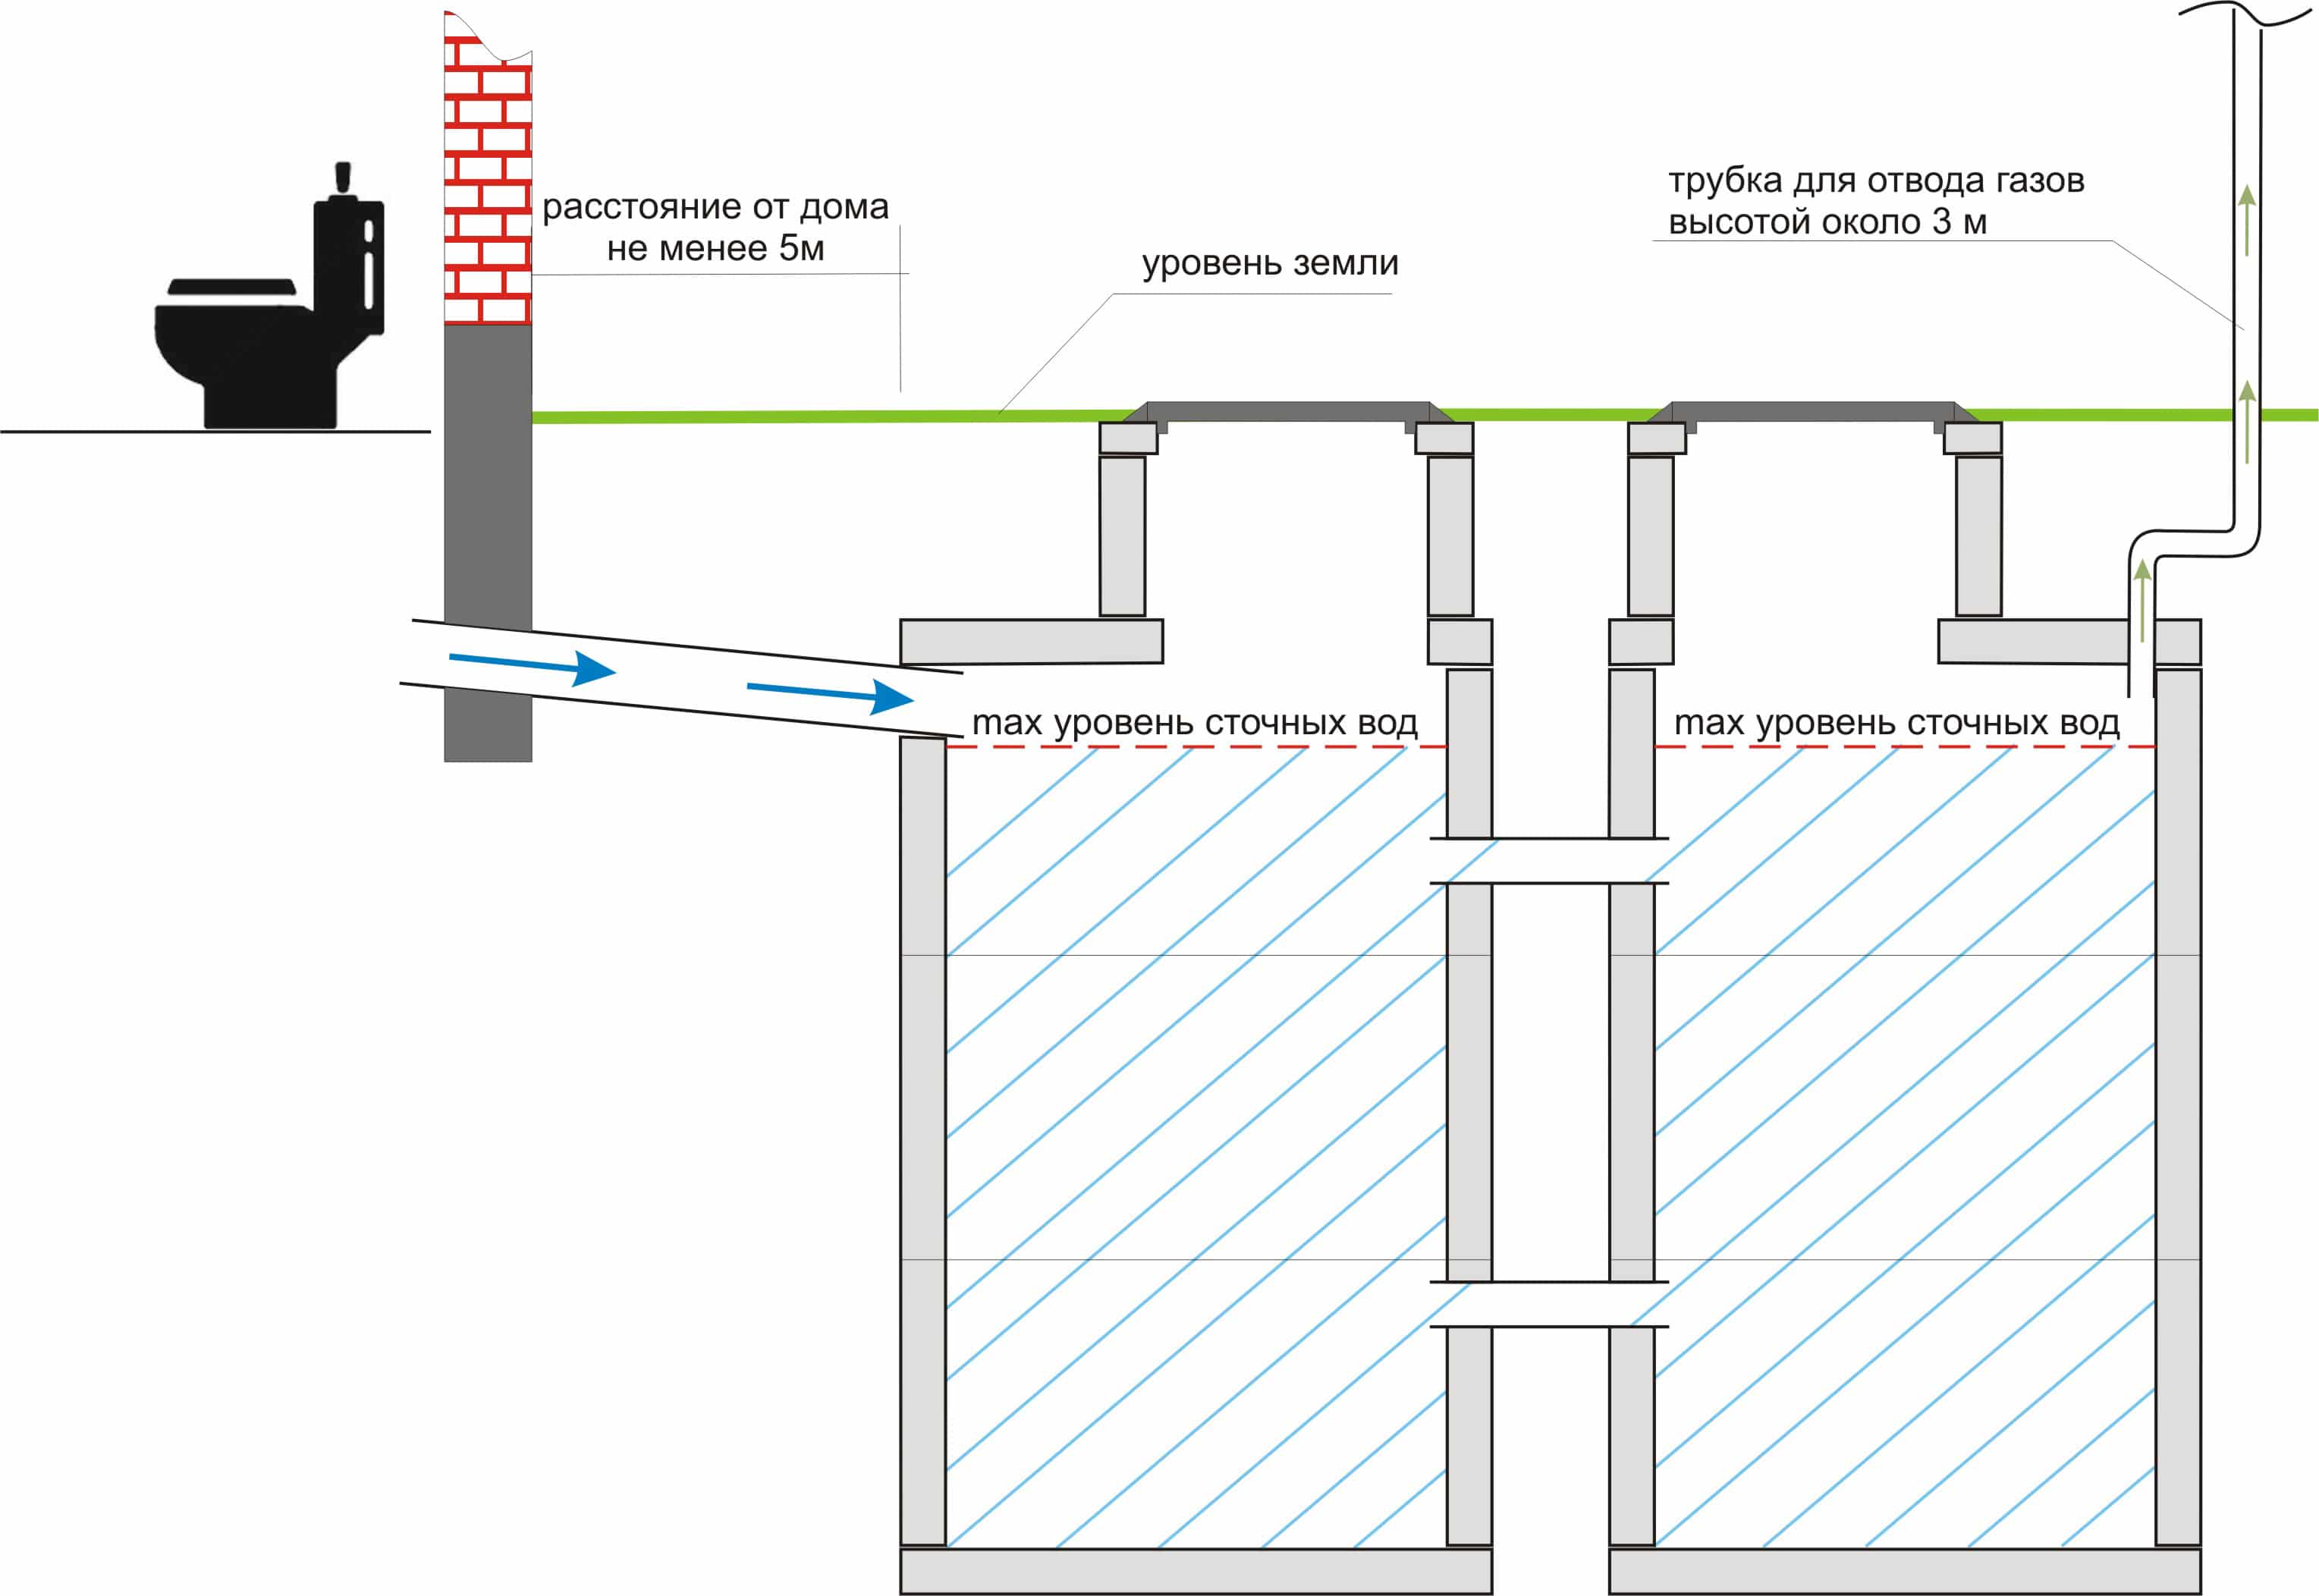 При возведении бетонного септика толщина стен резервуаров должна составлять 20 см, а толщина внутренних стенок между камерами – 15 см